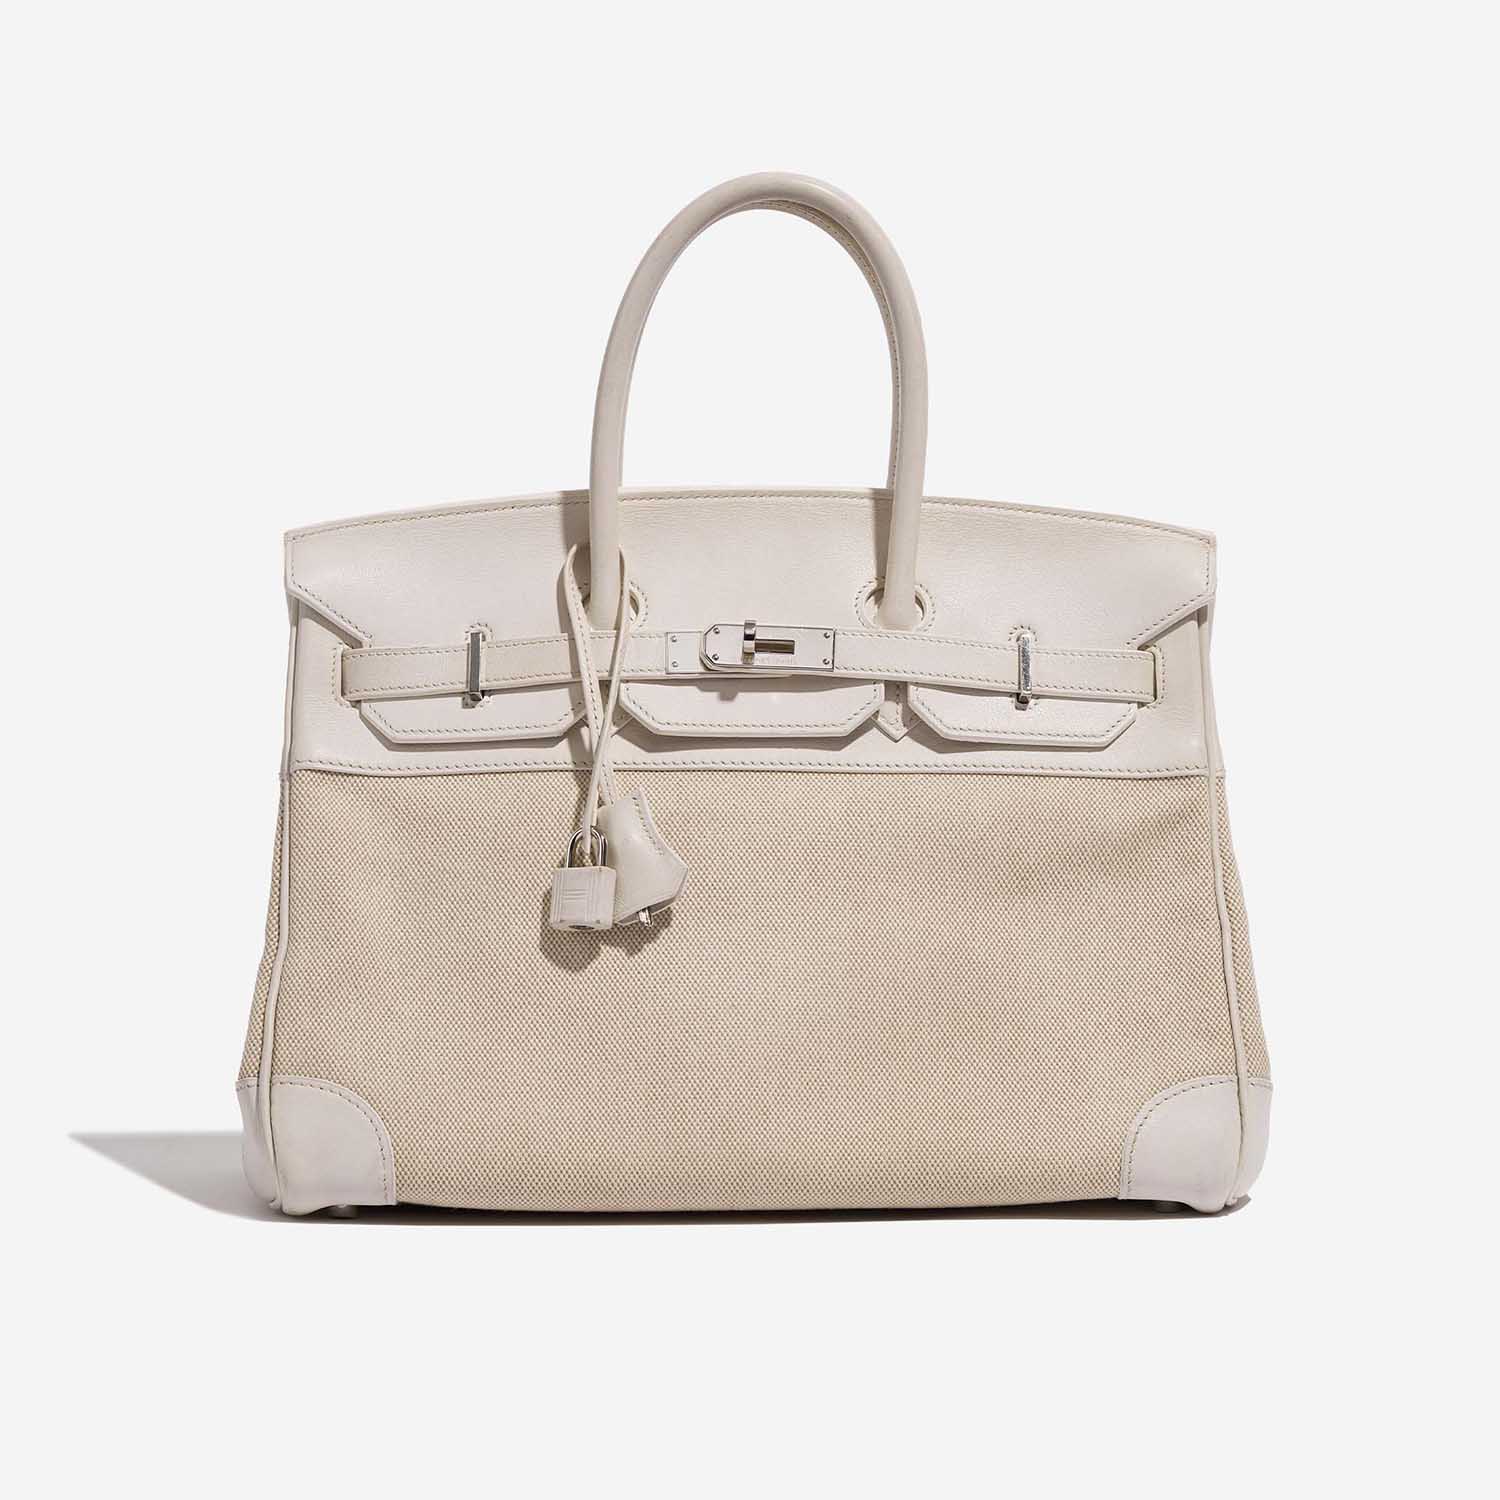 Hermès Birkin 35 Beton Front | Verkaufen Sie Ihre Designertasche auf Saclab.com